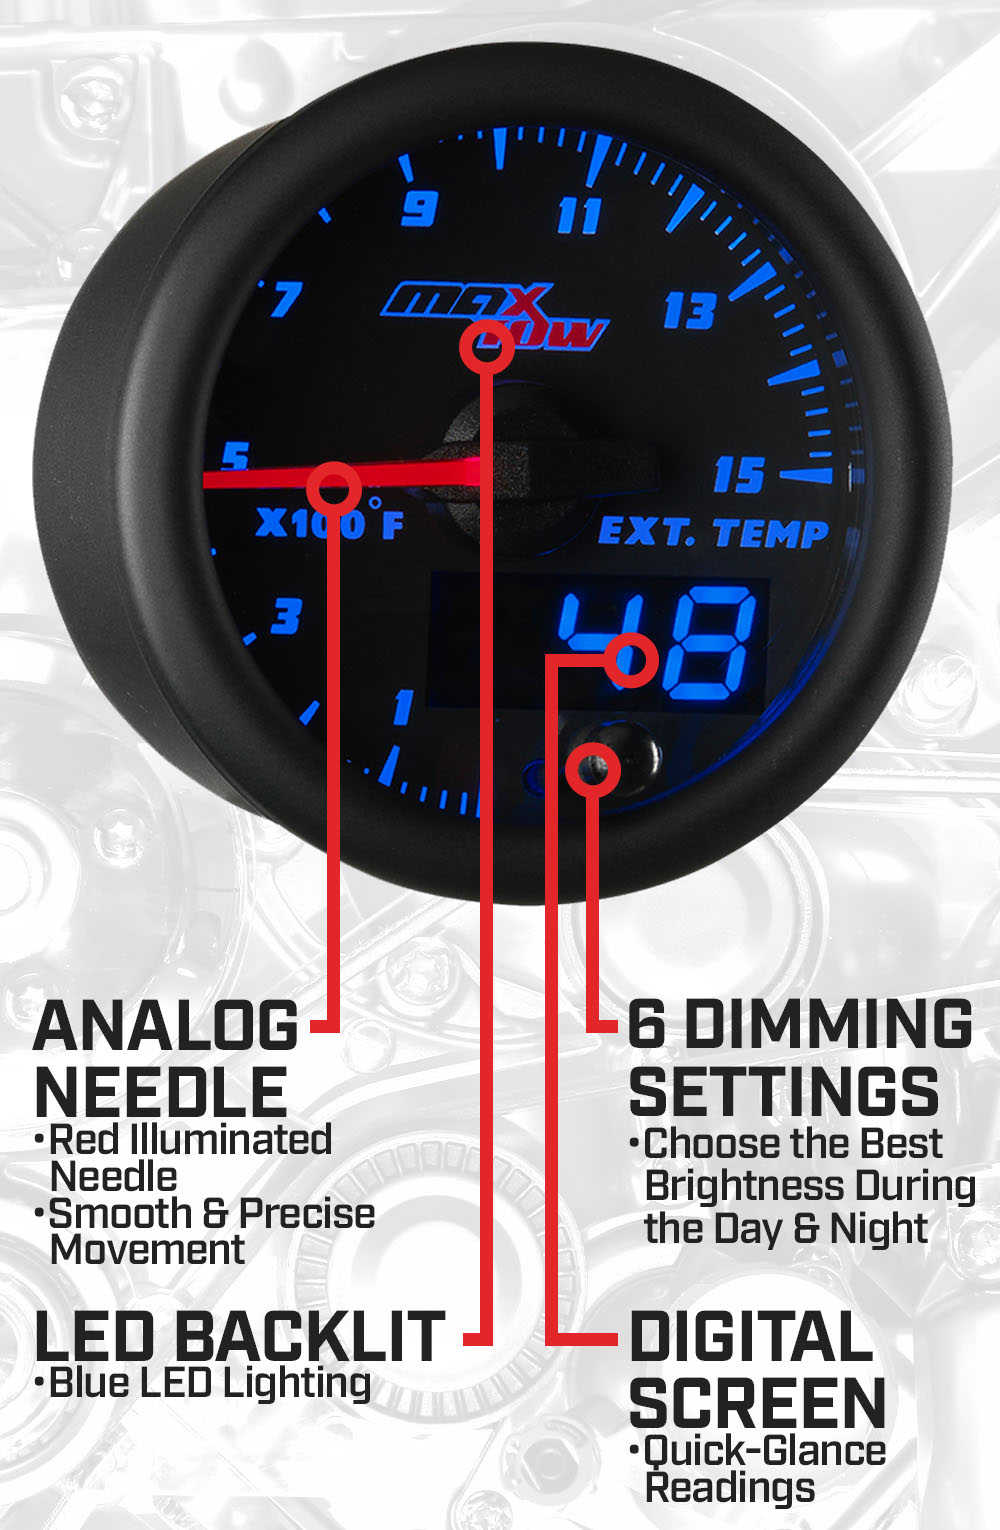 Black & Blue Double Vision 1500F Pyrometer EGT Gauge Features